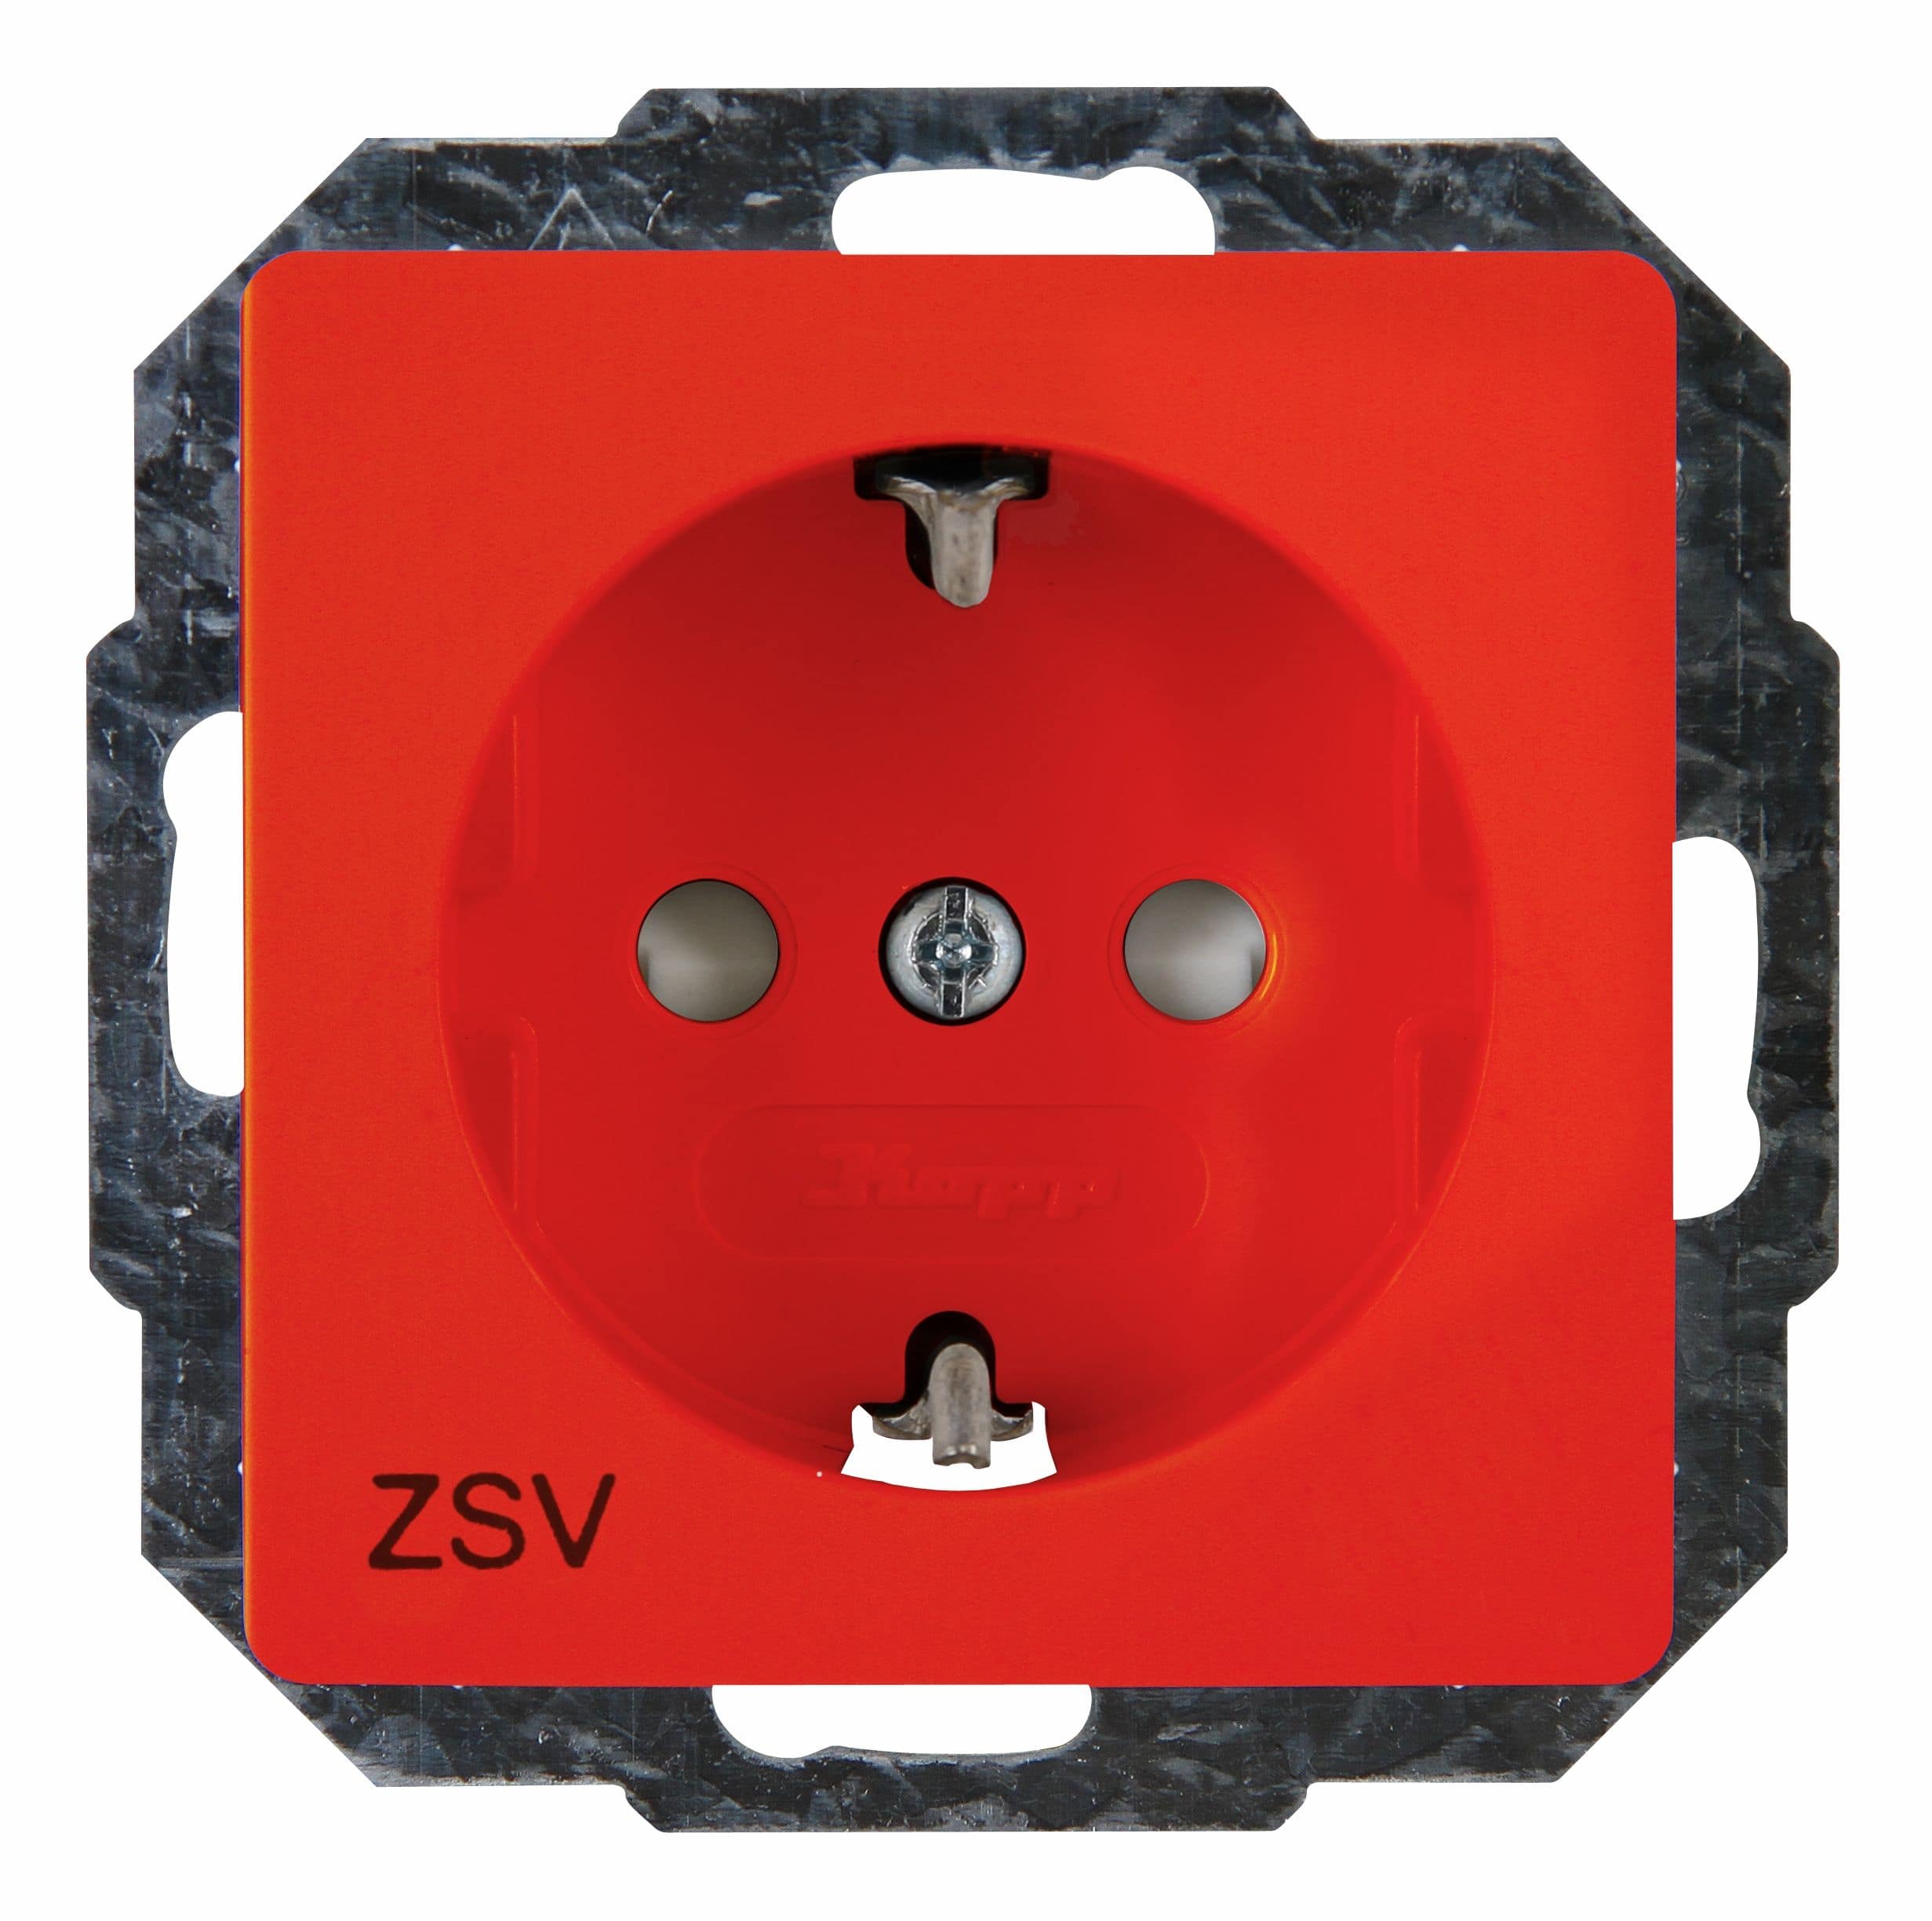 Kopp 920622006 Schutzkontakt-Steckdose mit erhöhtem Berührungsschutz "ZSV", orange